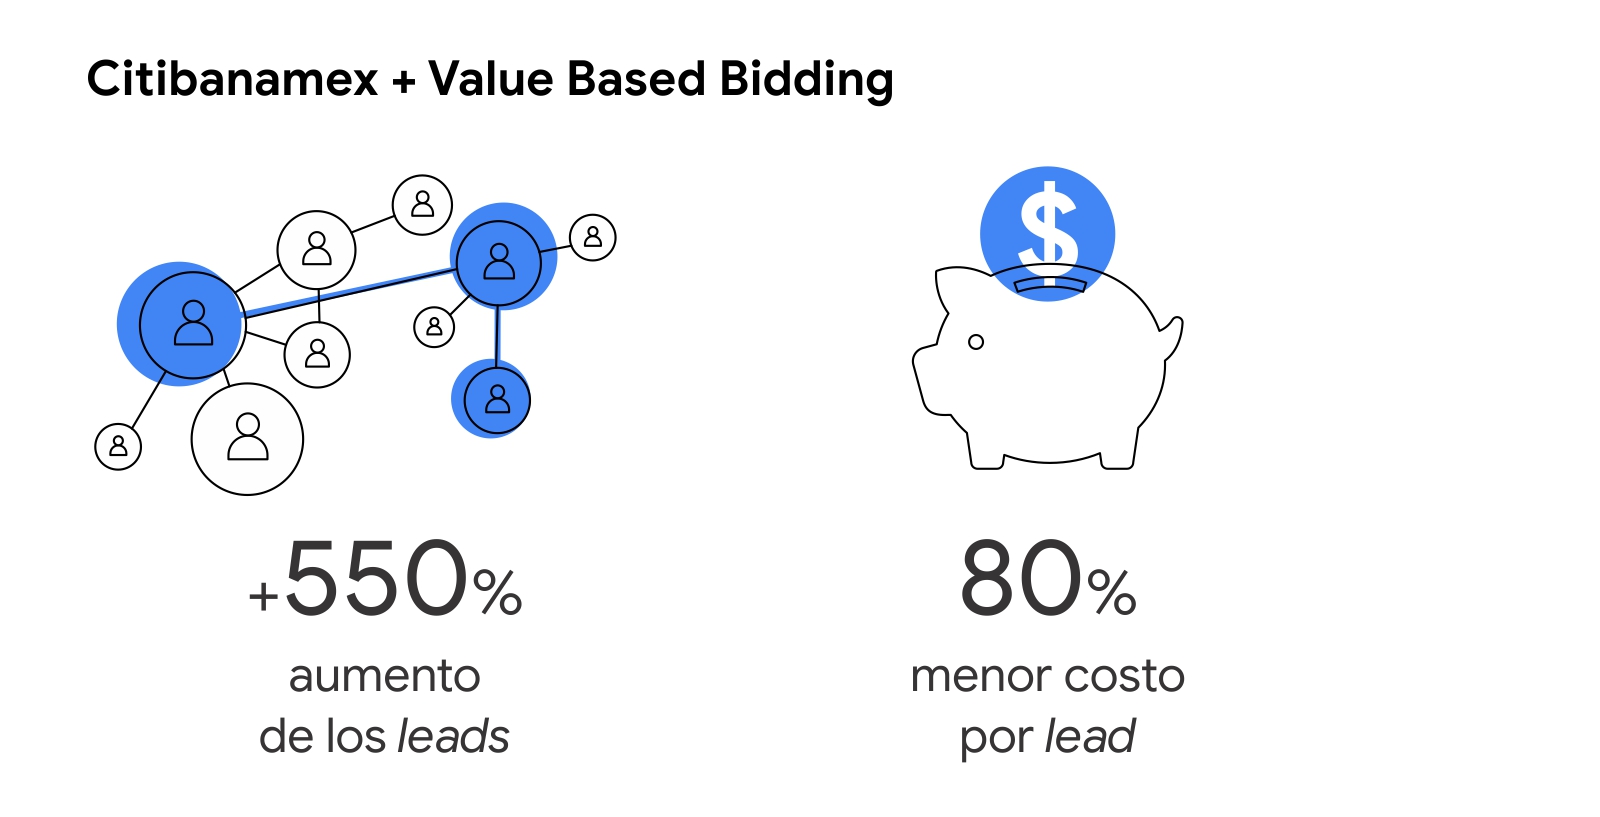 Dos íconos muestran los resultados que tuvo Citibanamex cuando aplicó Value Based Bidding: 550% aumento de los leads y 80% menor costo por lead.